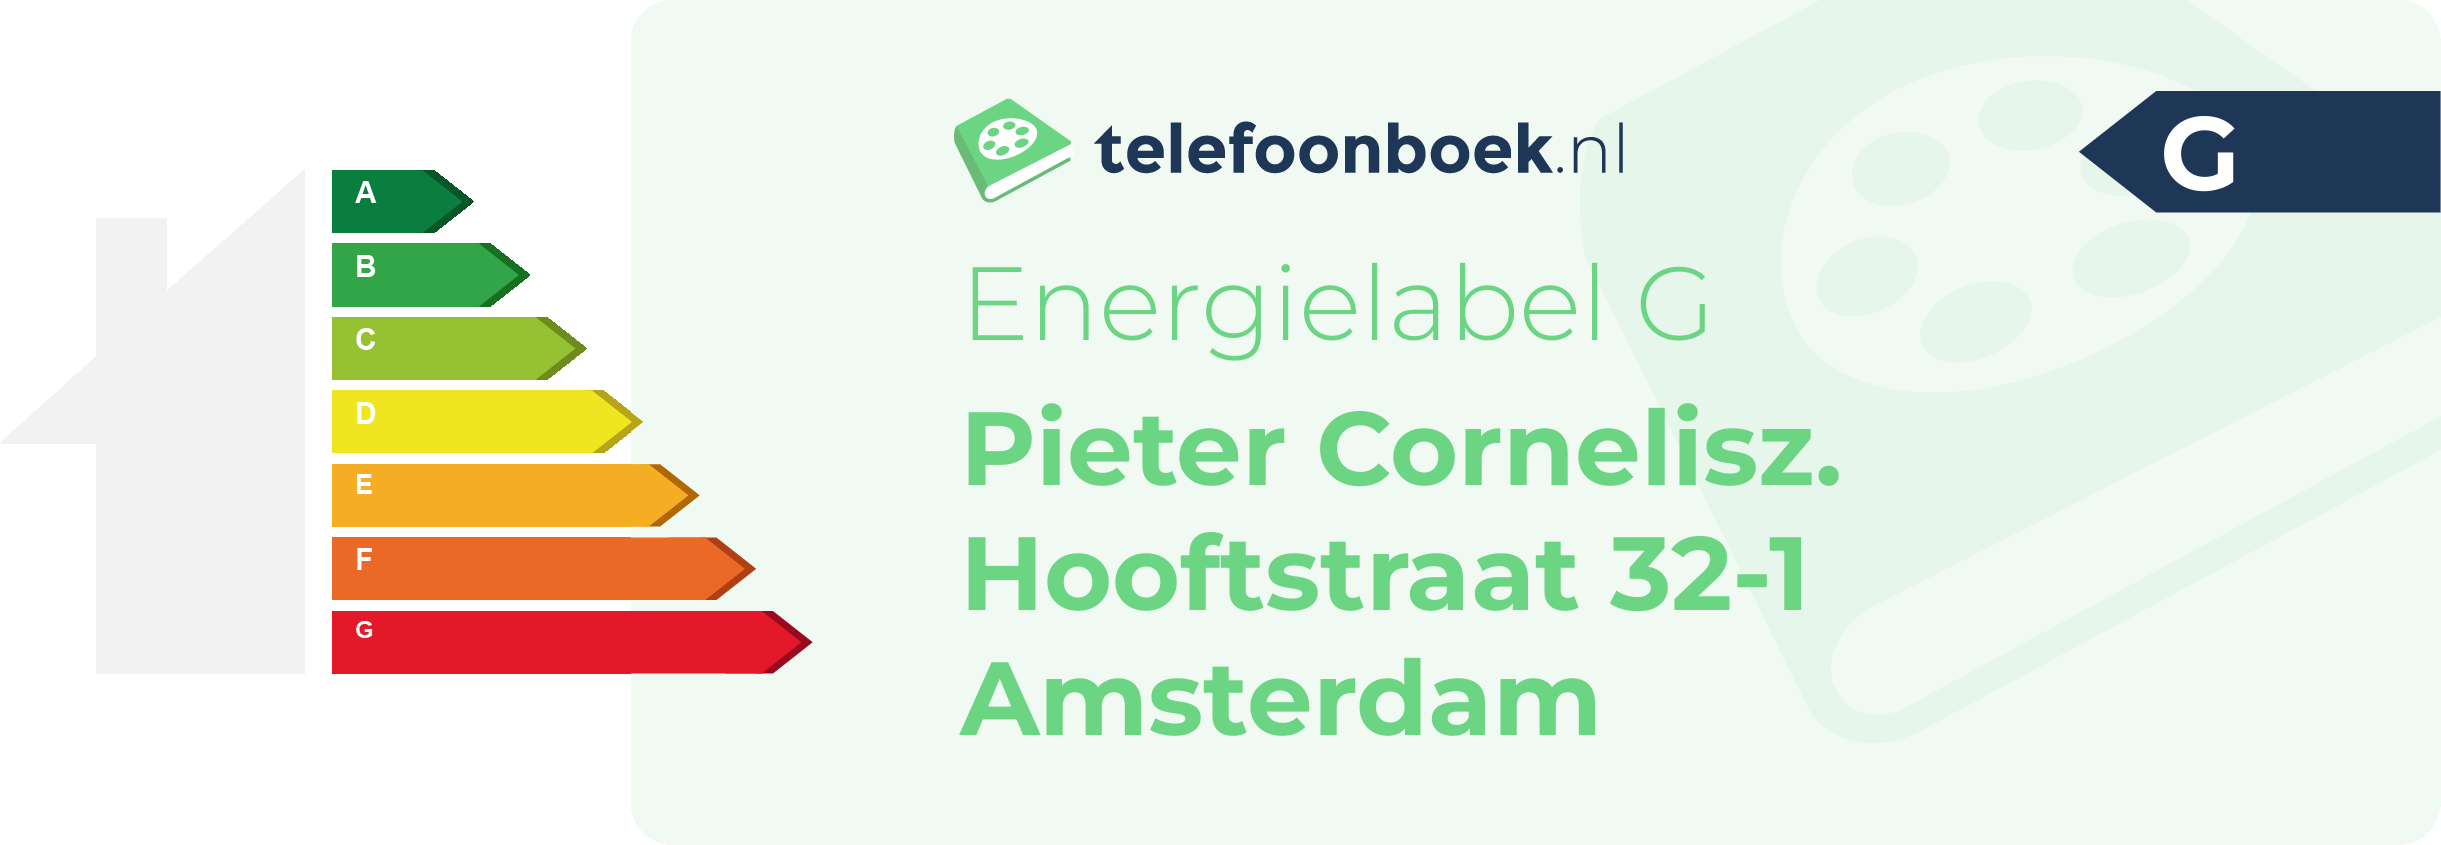 Energielabel Pieter Cornelisz. Hooftstraat 32-1 Amsterdam